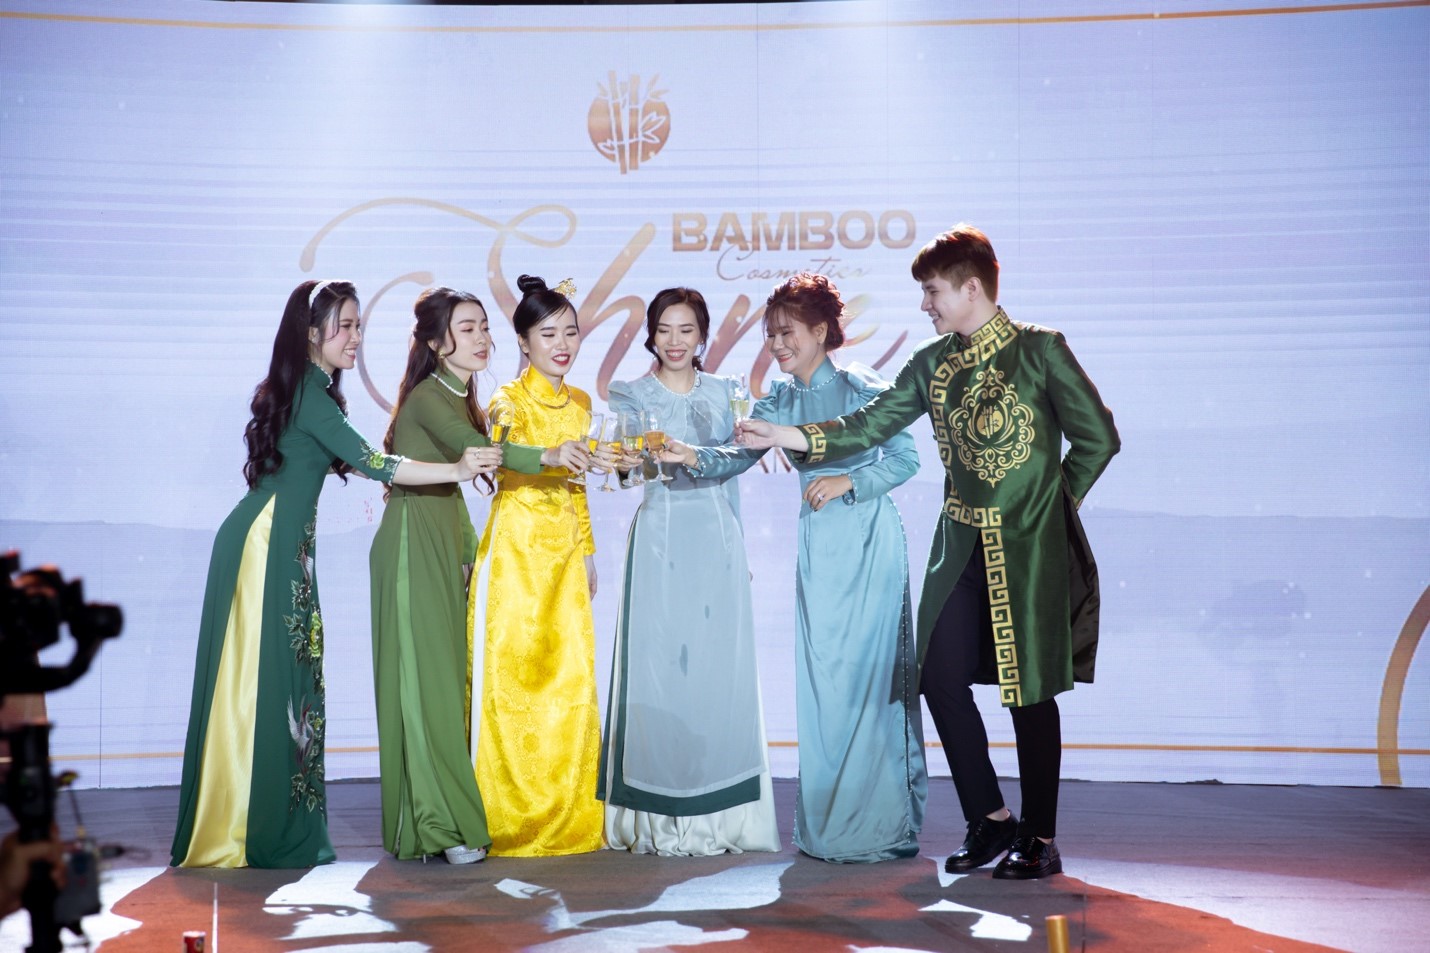 Dược mỹ phẩm Bamboo Cosmetics tri ân hệ thống bằng sự kiện “Shine – Toả sáng cùng Bamboo” - ảnh 3